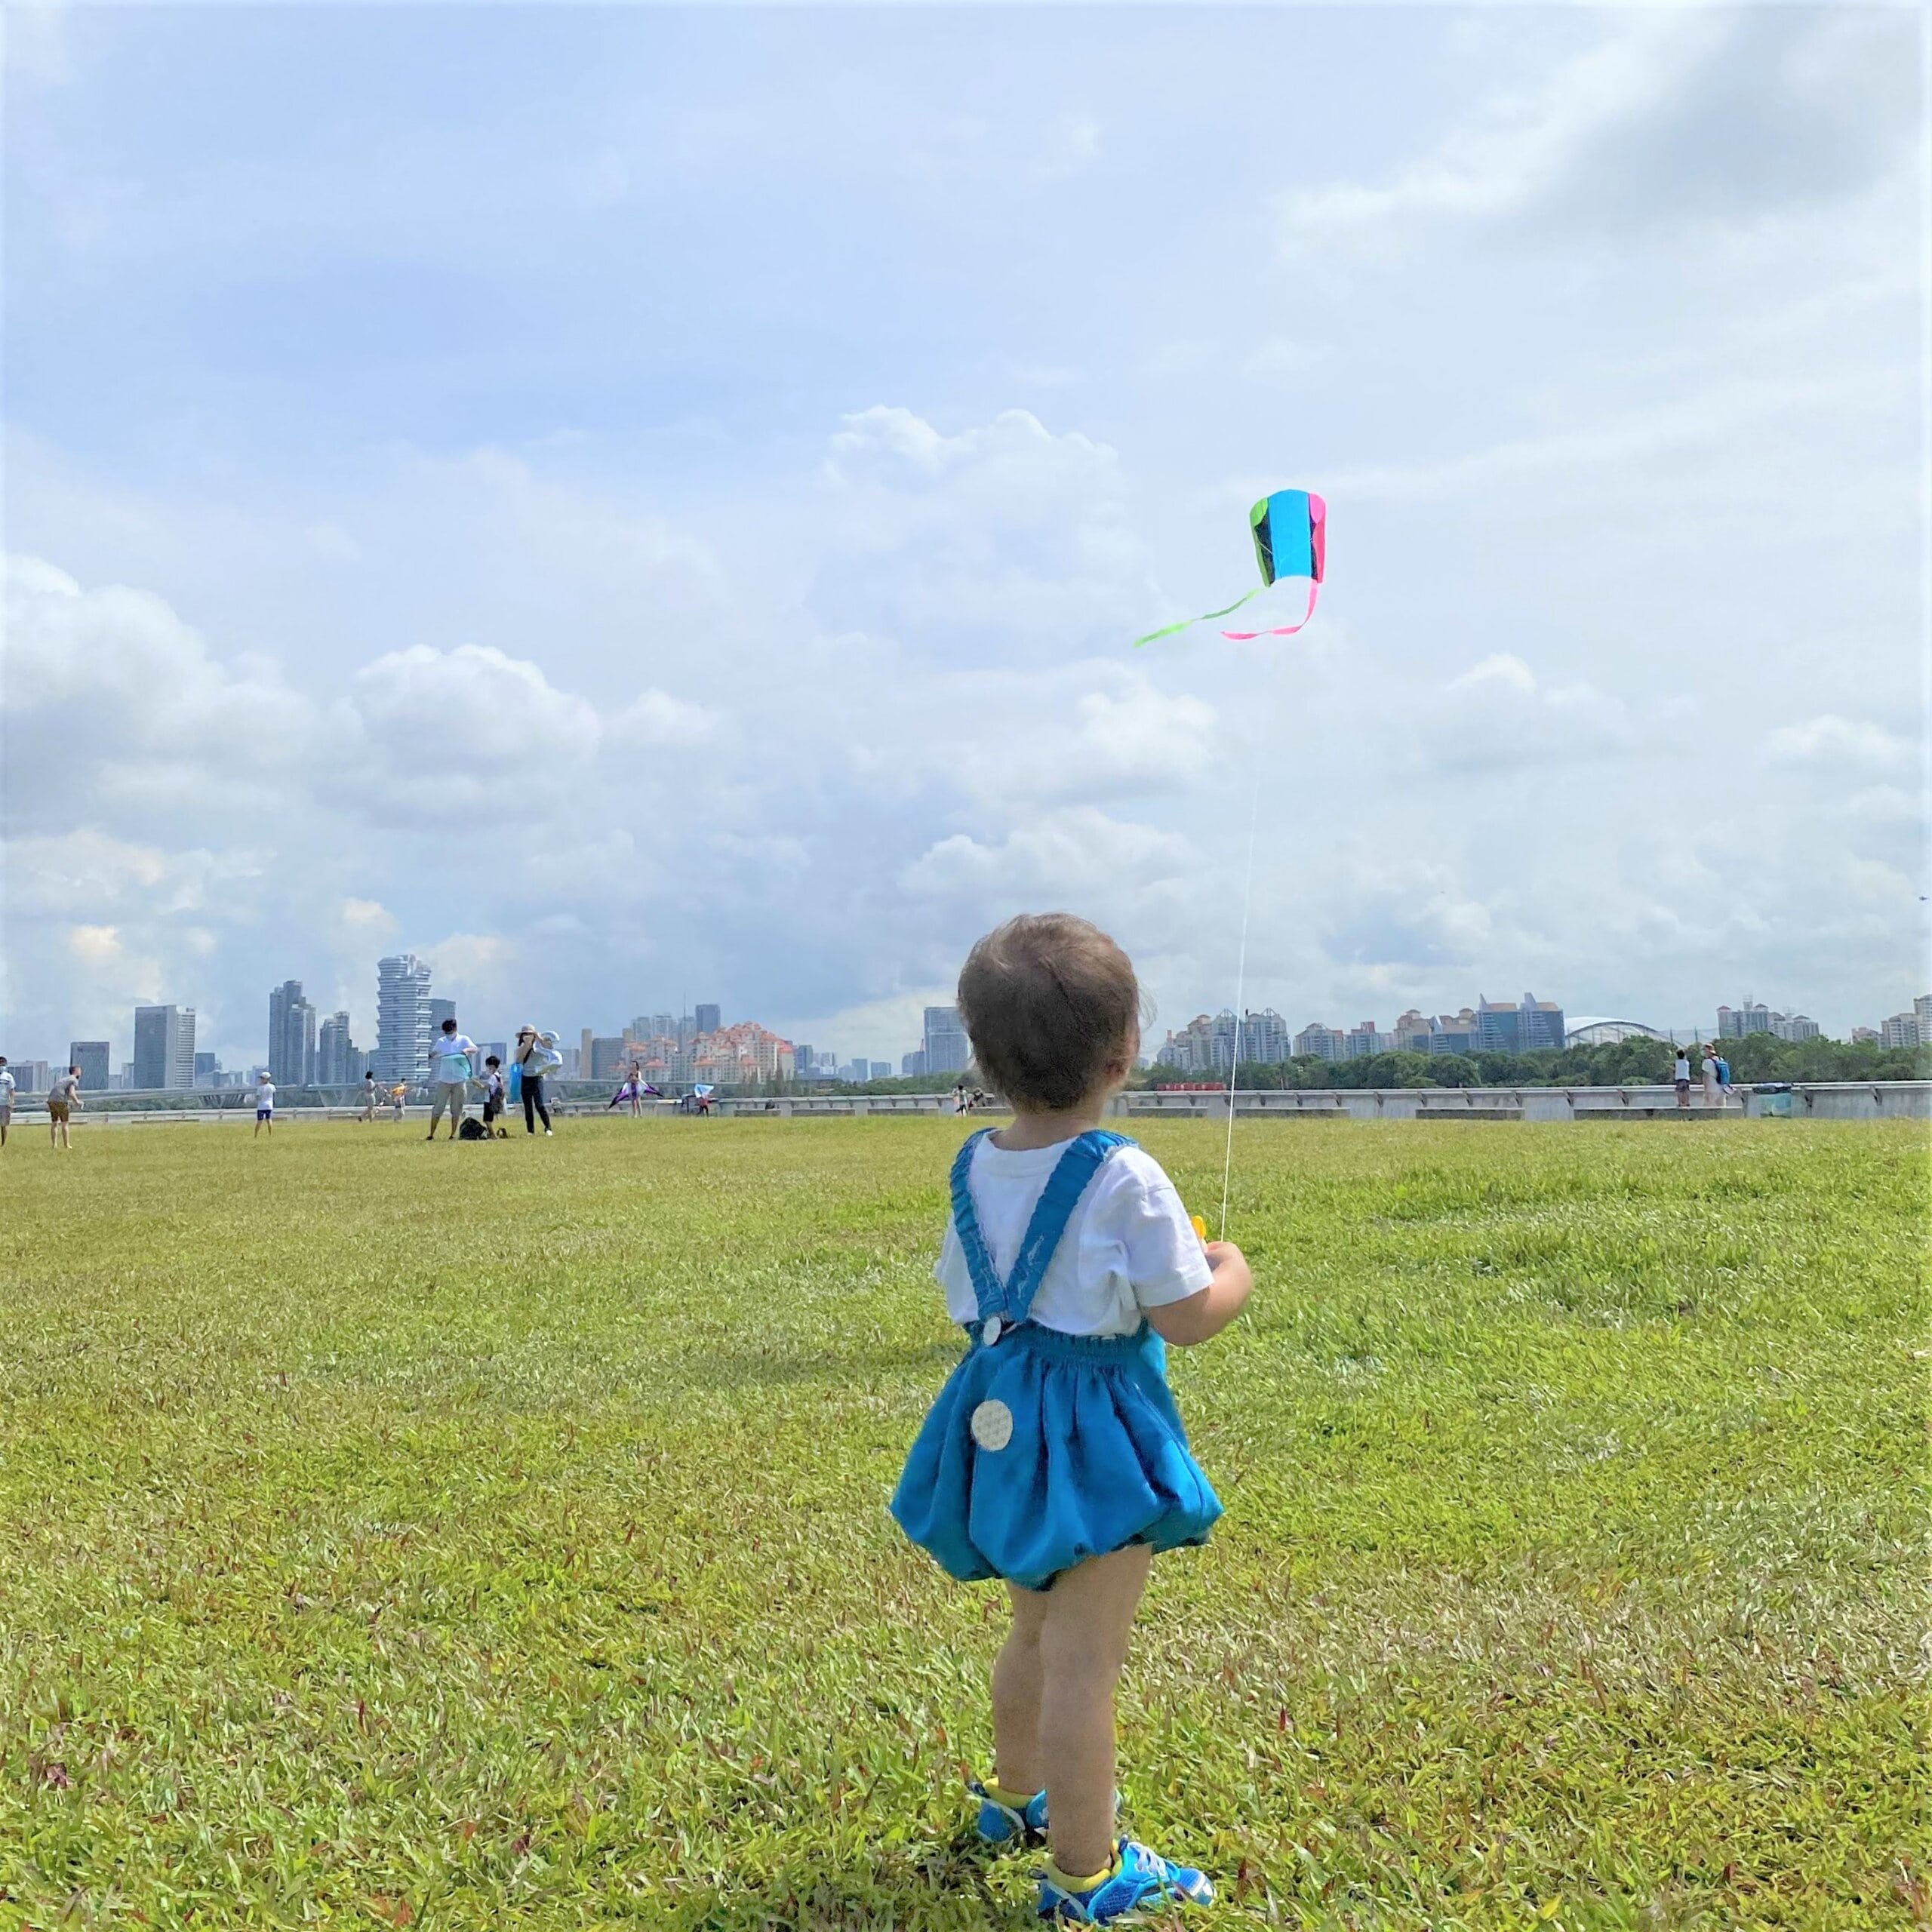 ポケットサイズの凧 ポケットカイト を持ってシンガポールの絶景スポットで凧あげ Lee